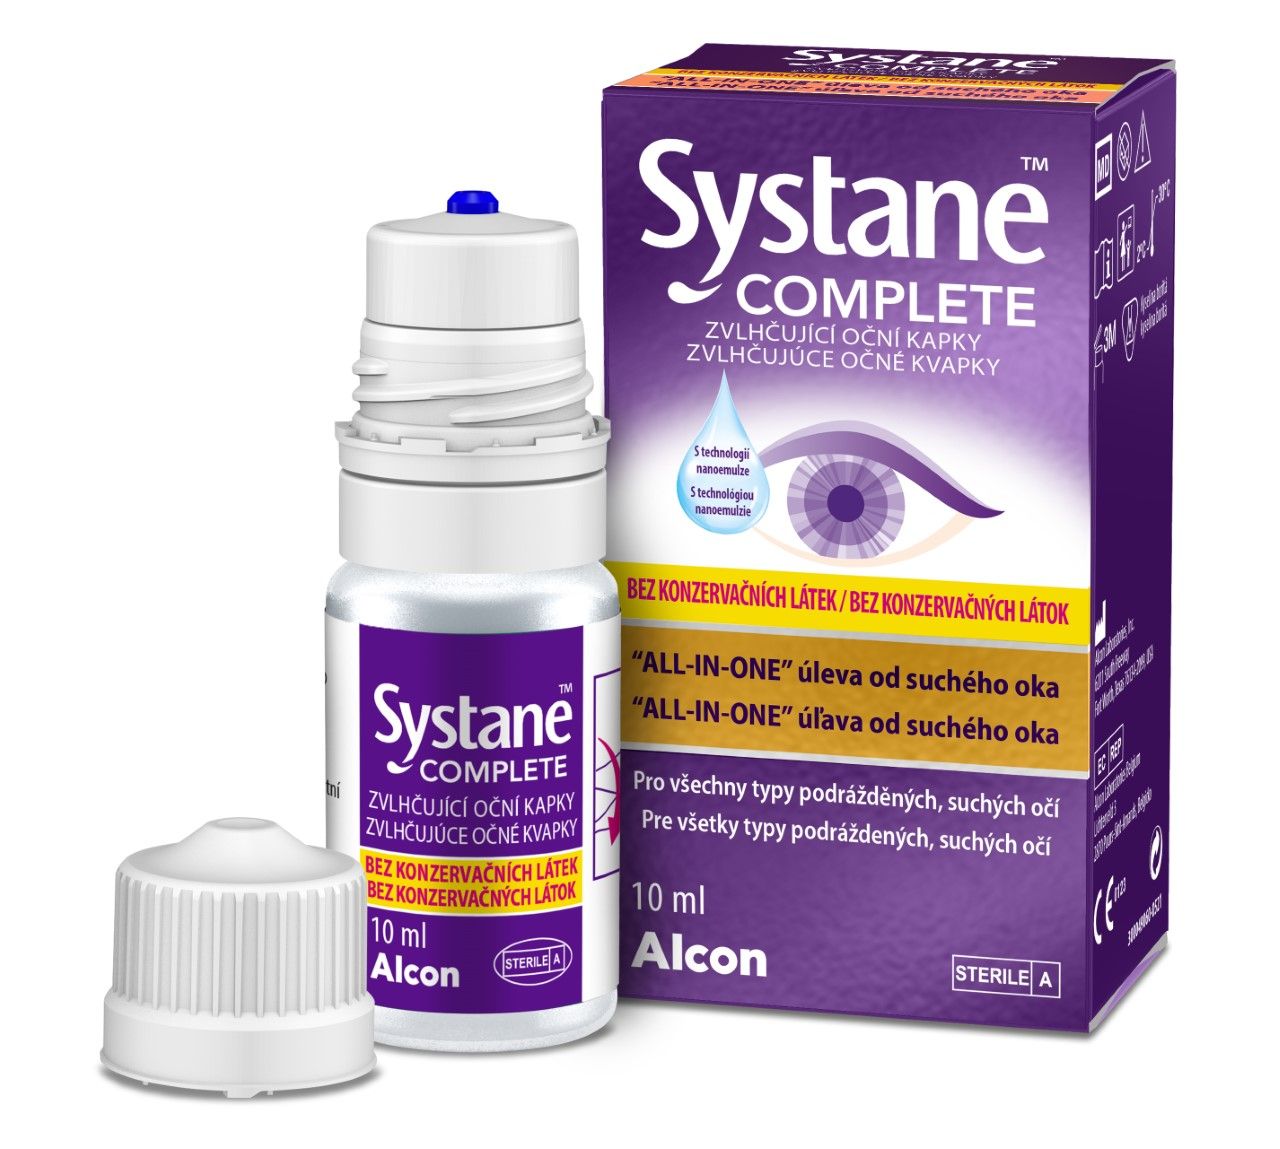 Systane Complete Zvlhčující oční kapky bez konzervačních látek 10 ml Systane